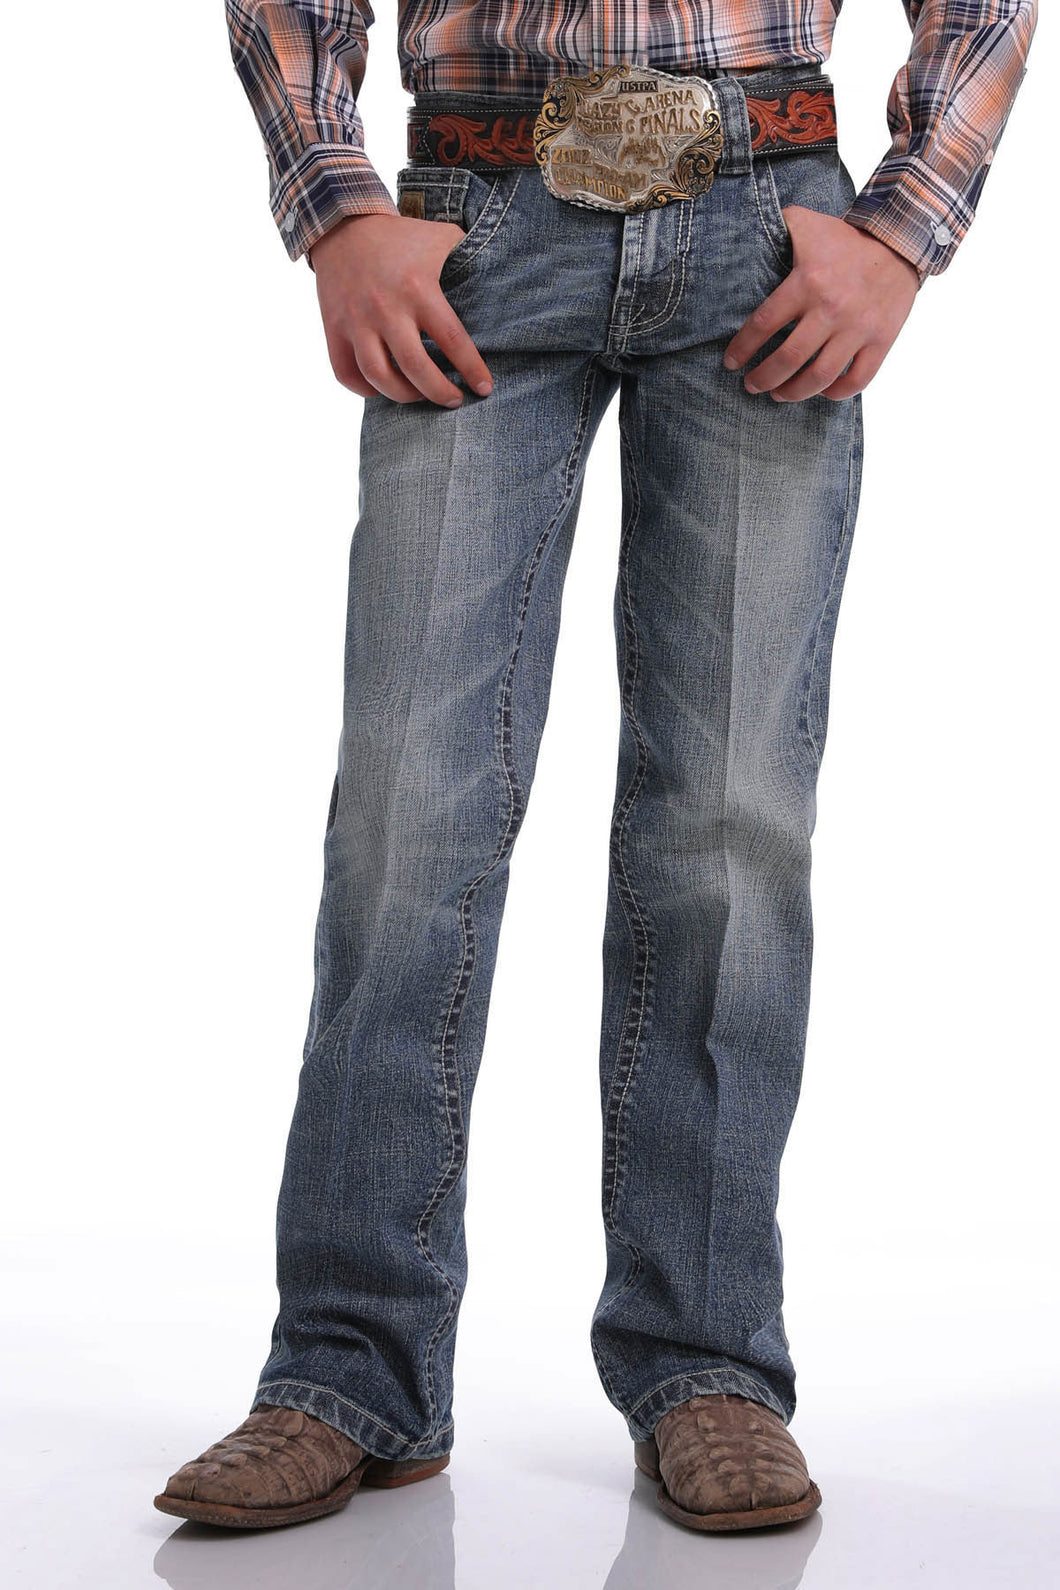 Pard's Western Shop Cinch Medium Stonewash Slim Fit Boot Cut Jeans for Boys